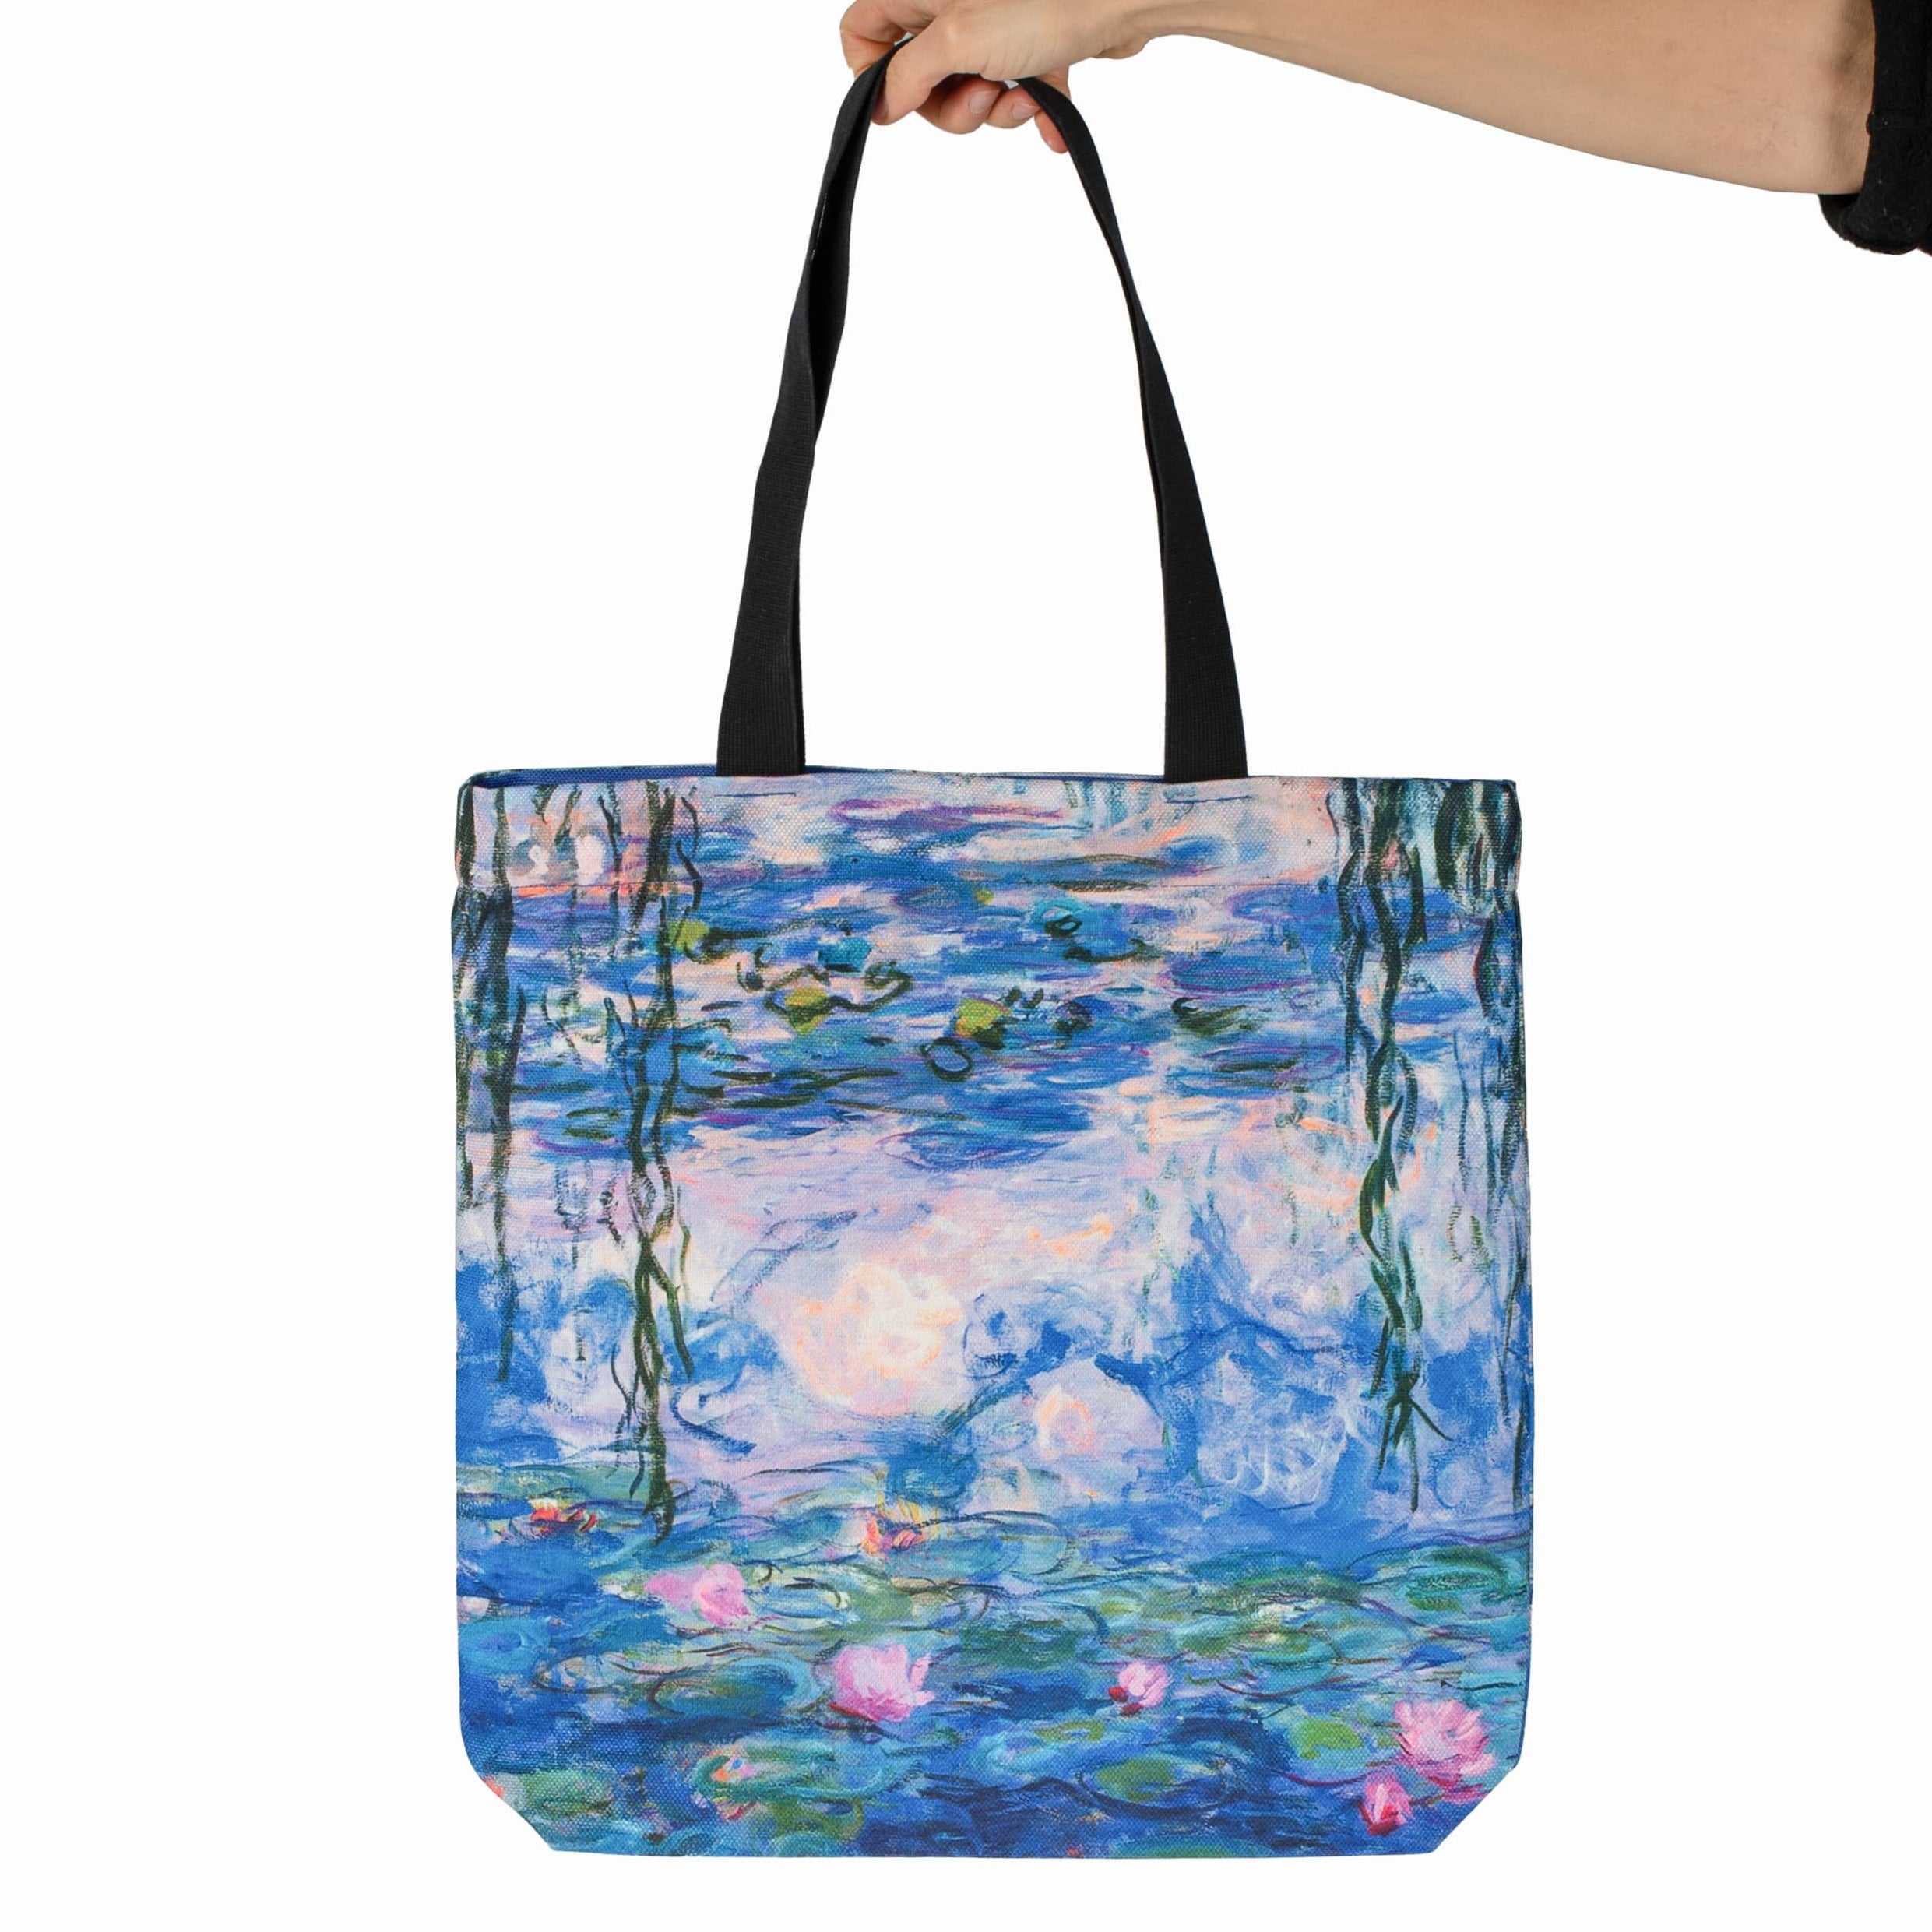 Pirkinių krepšys Claude Monet "Water Lilies"